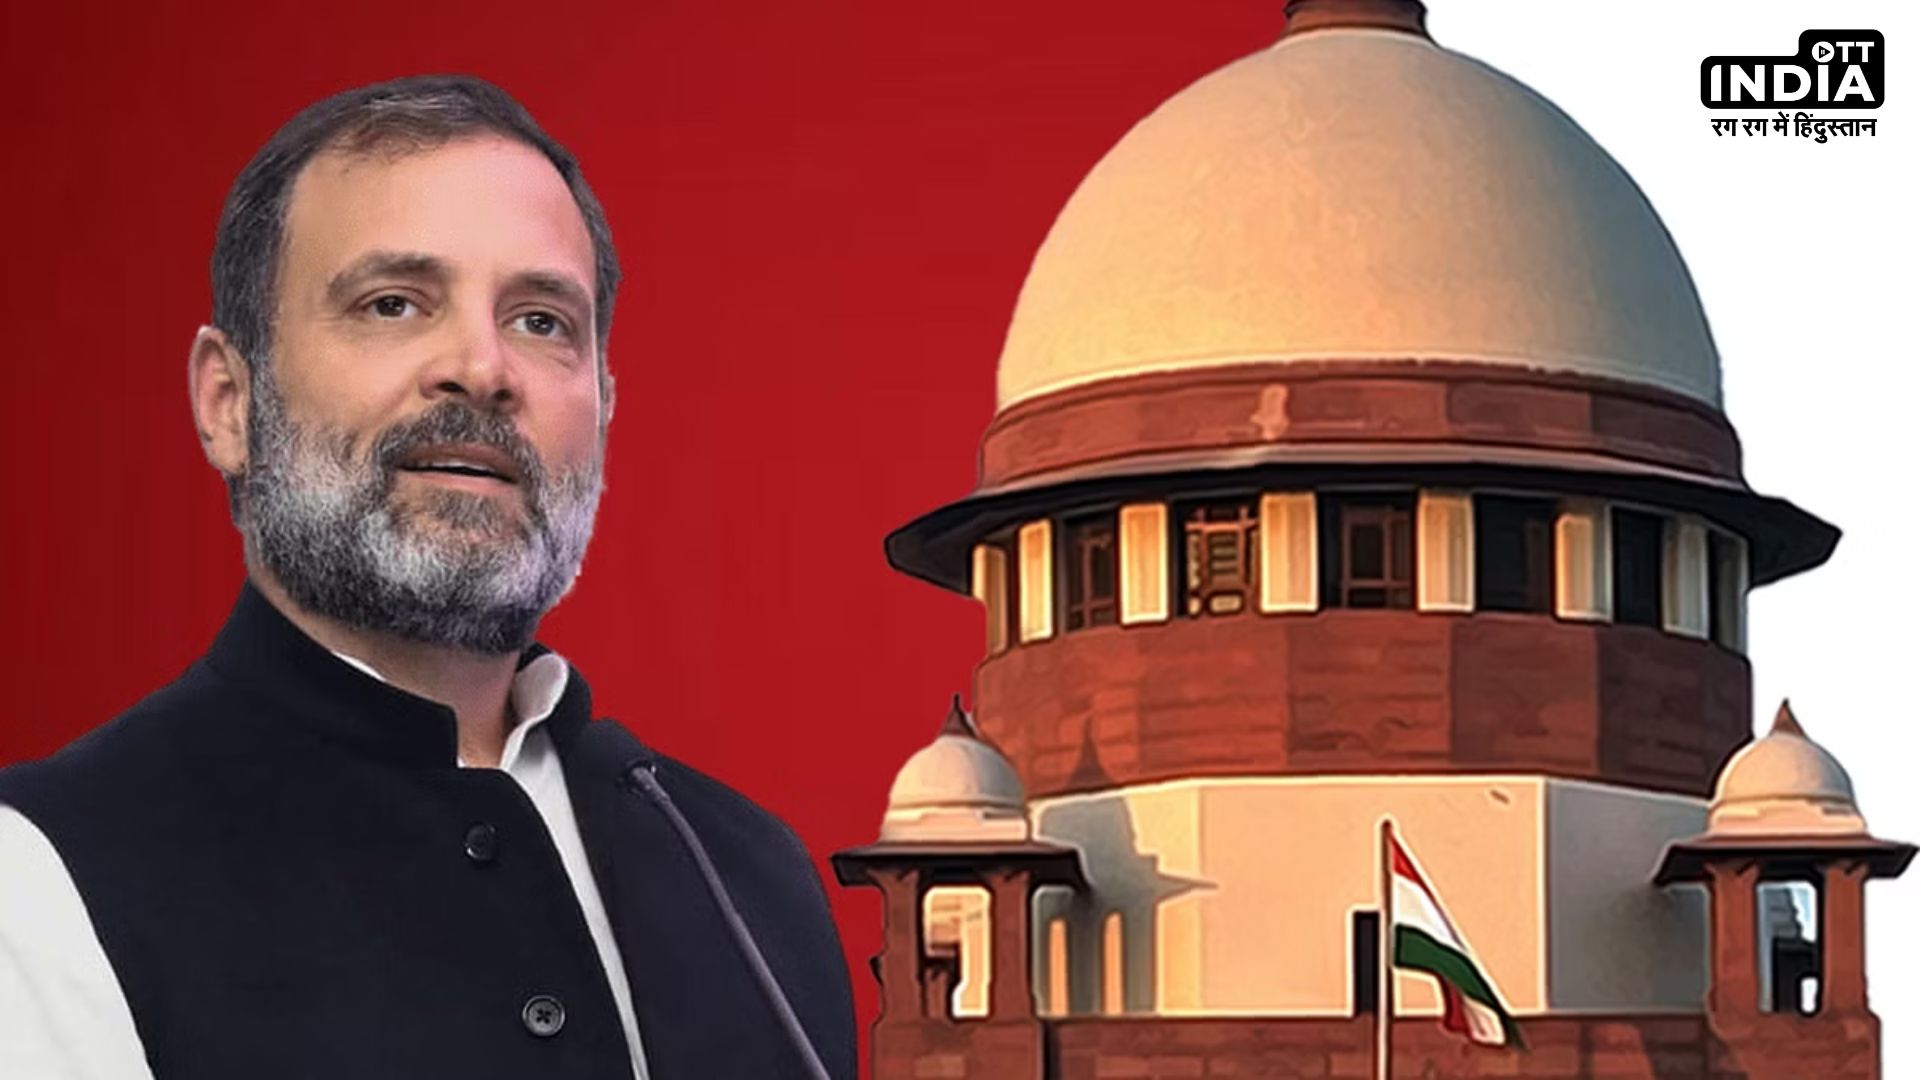 Modi Surname Case: मोदी सरनेम मामले में राहुल को सुप्रीम राहत, सर्वोच्च न्यायालय ने सजा पर लगाई रोक